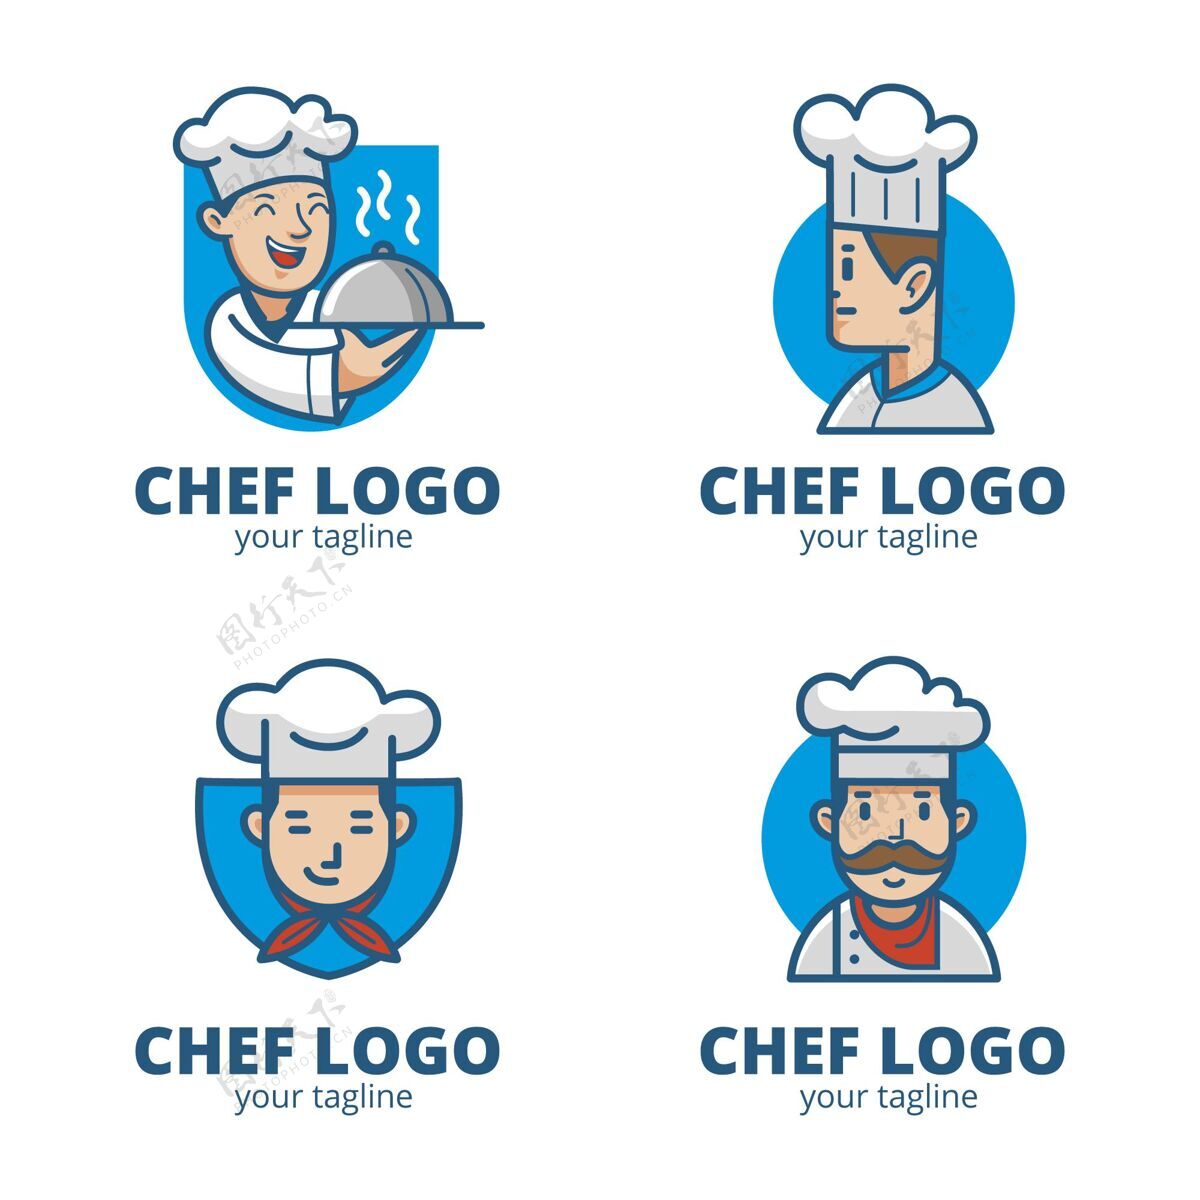 企业平面厨师标志模板收集公司企业标识标识